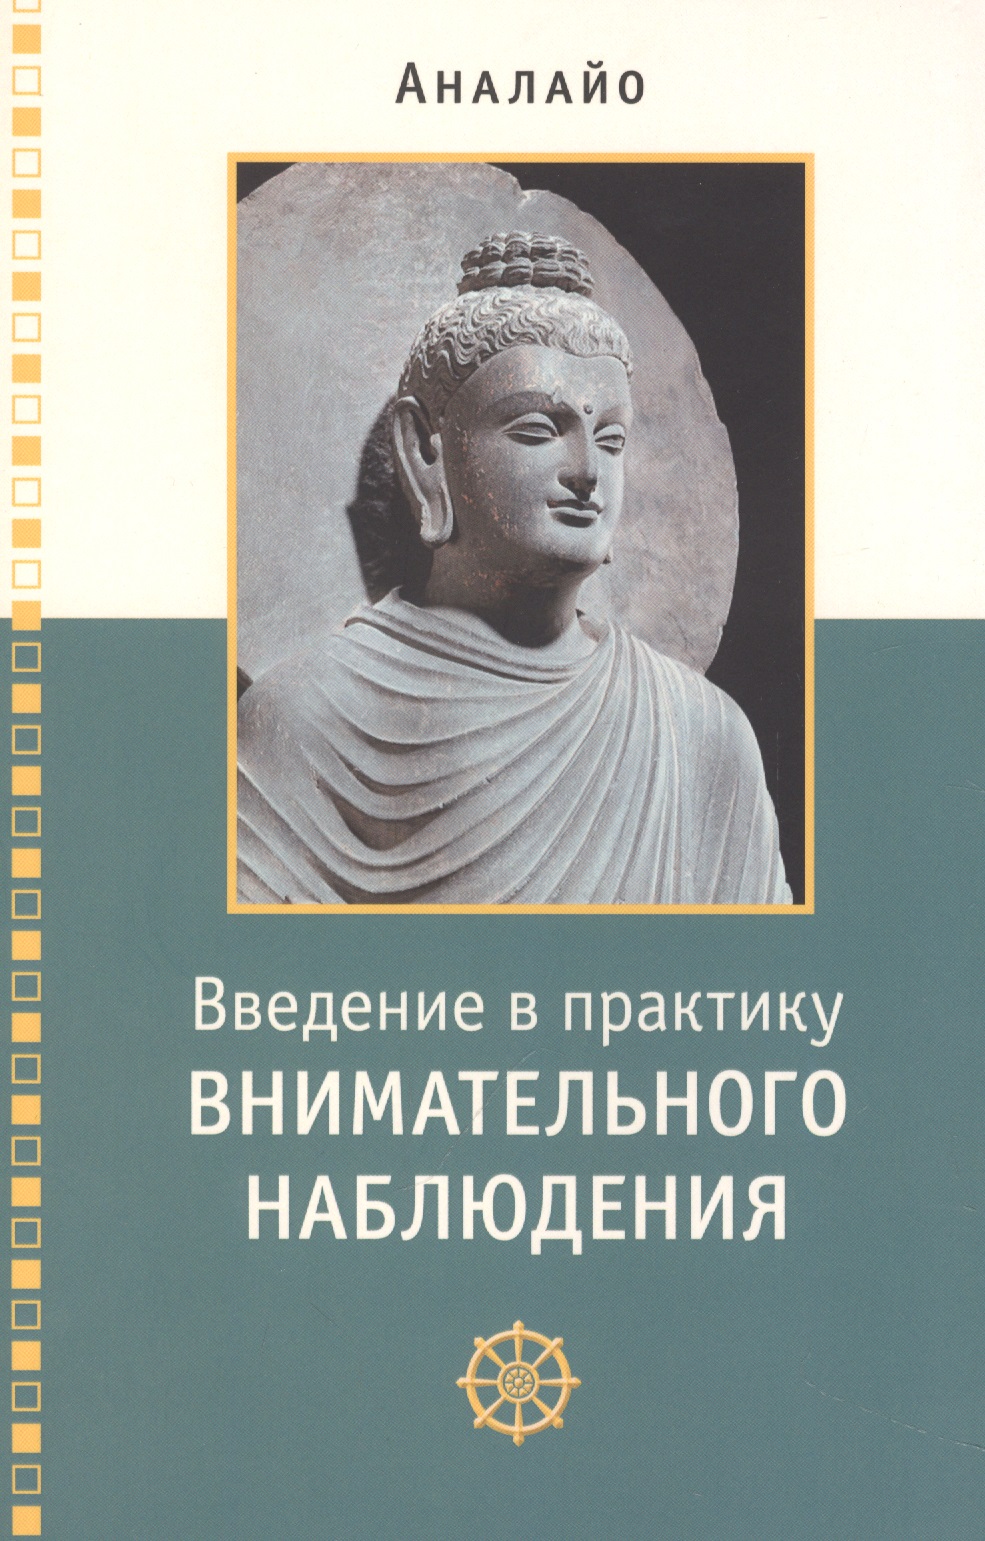 аналайо бхиккху введение в практику внимательного наблюдения Введение в практику внимательного наблюдения Буддийское обоснование и практические занятия